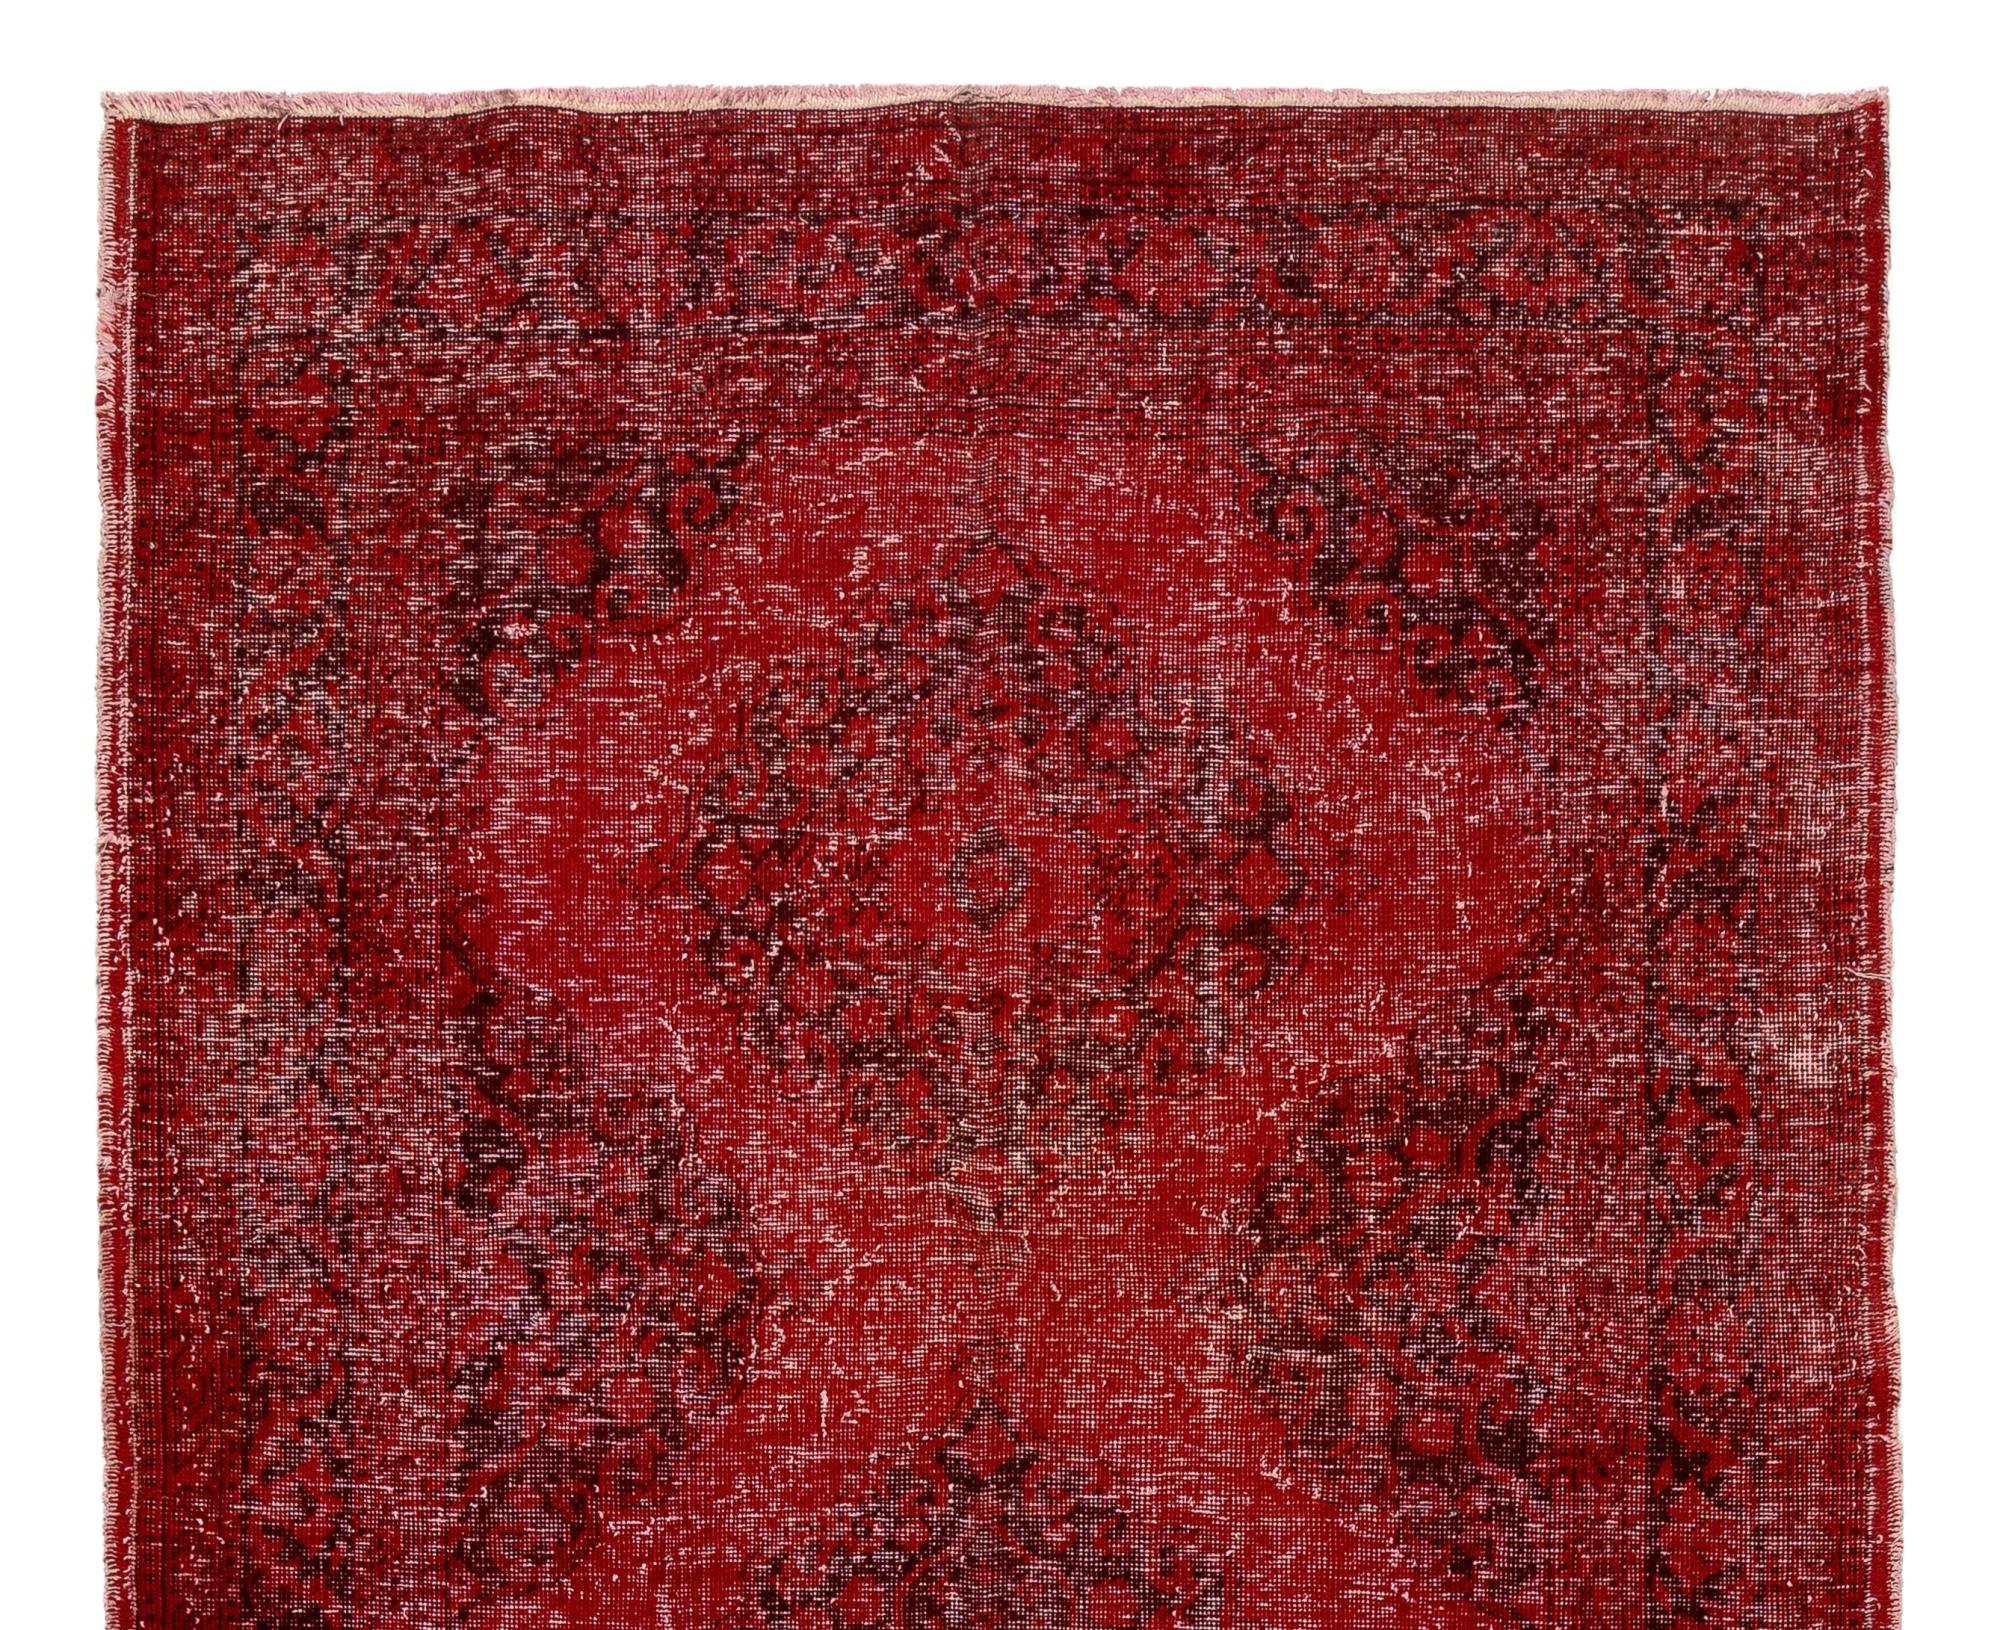 Un chemin de table turc vintage avec un design de médaillons reliés surteint dans un rouge riche et profond, idéal pour apporter une touche de couleur et un sentiment de fête aux intérieurs contemporains.

Le tapis est finement noué à la main dans